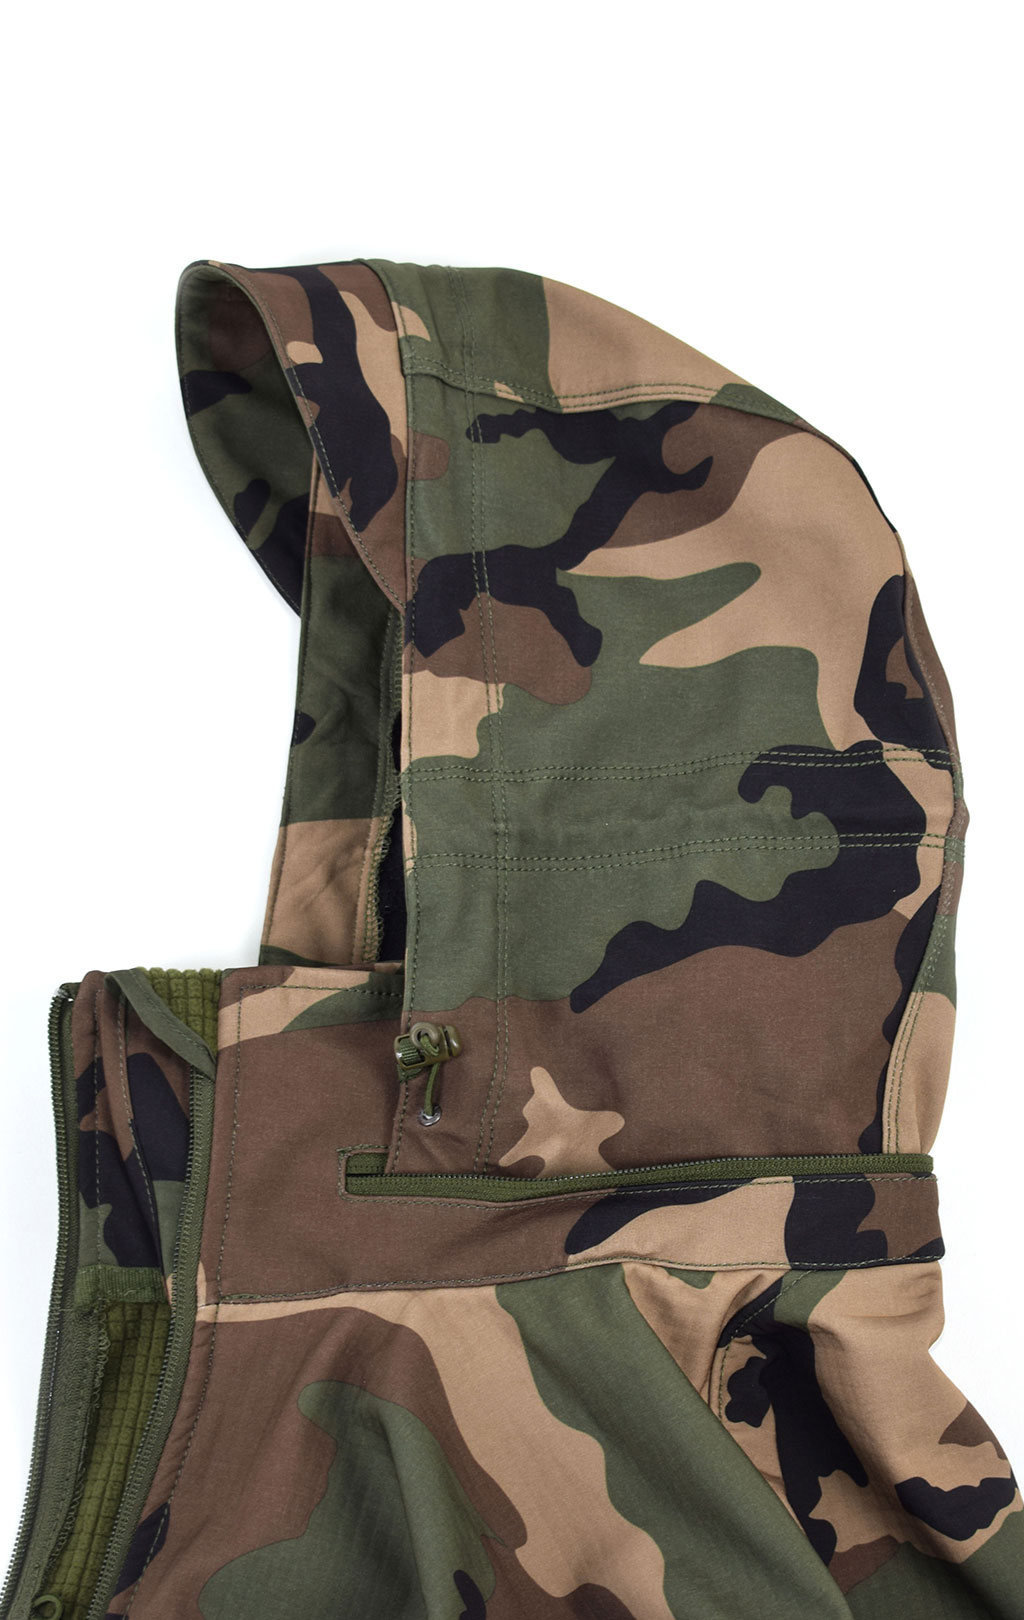 Куртка тактическая softshell Pentagon мембрана ARTAXES Soft Shell camo woodland 08011 